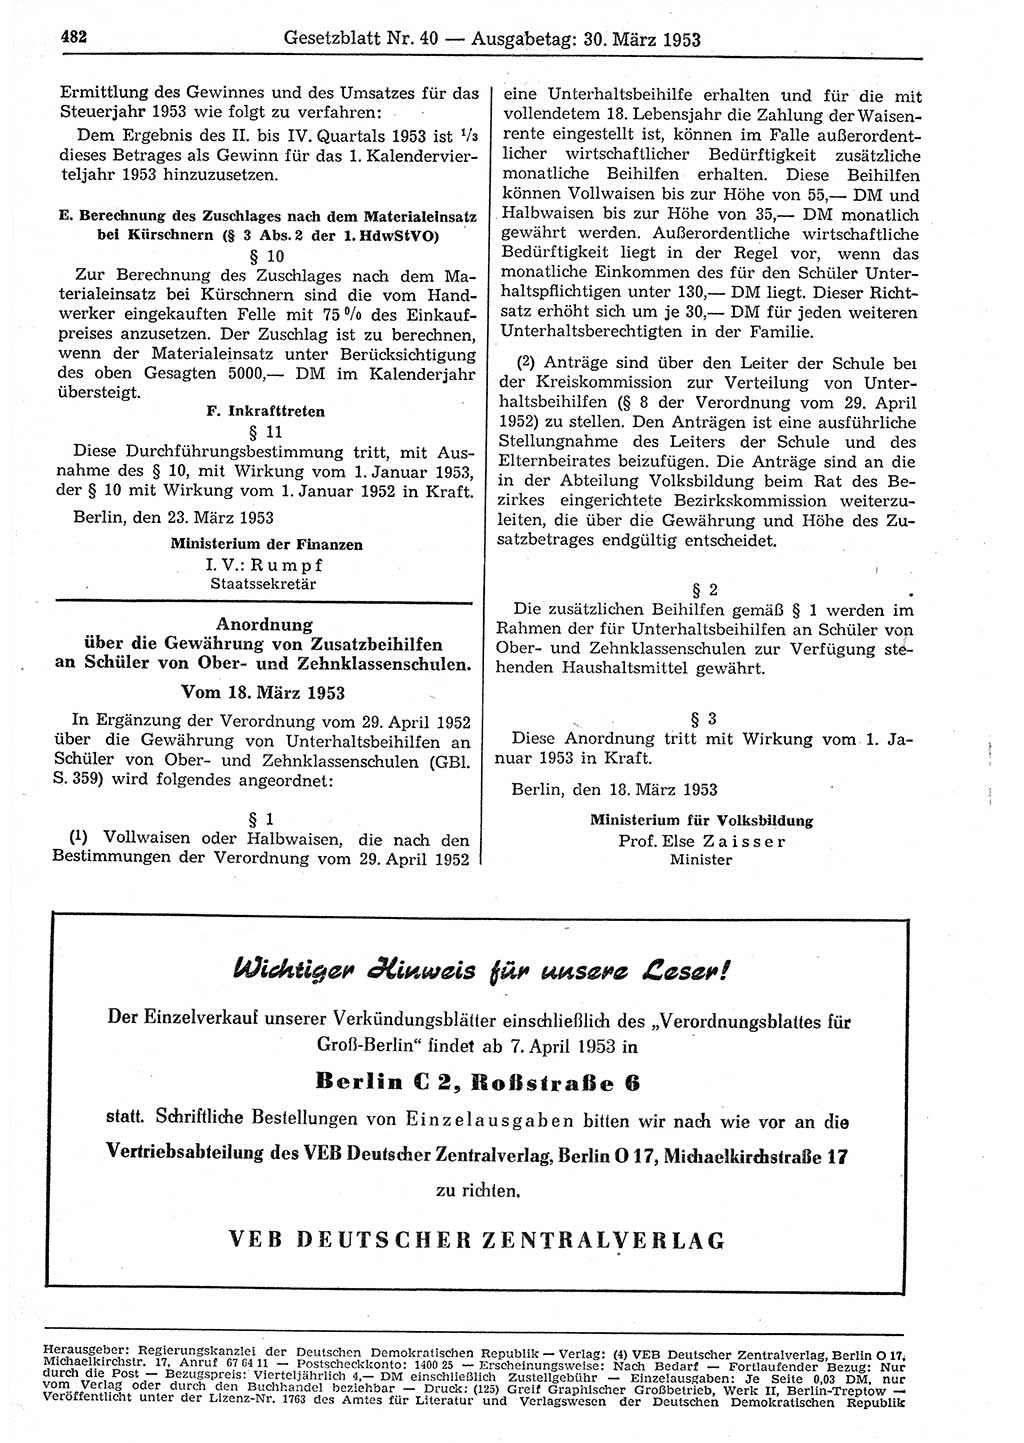 Gesetzblatt (GBl.) der Deutschen Demokratischen Republik (DDR) 1953, Seite 482 (GBl. DDR 1953, S. 482)